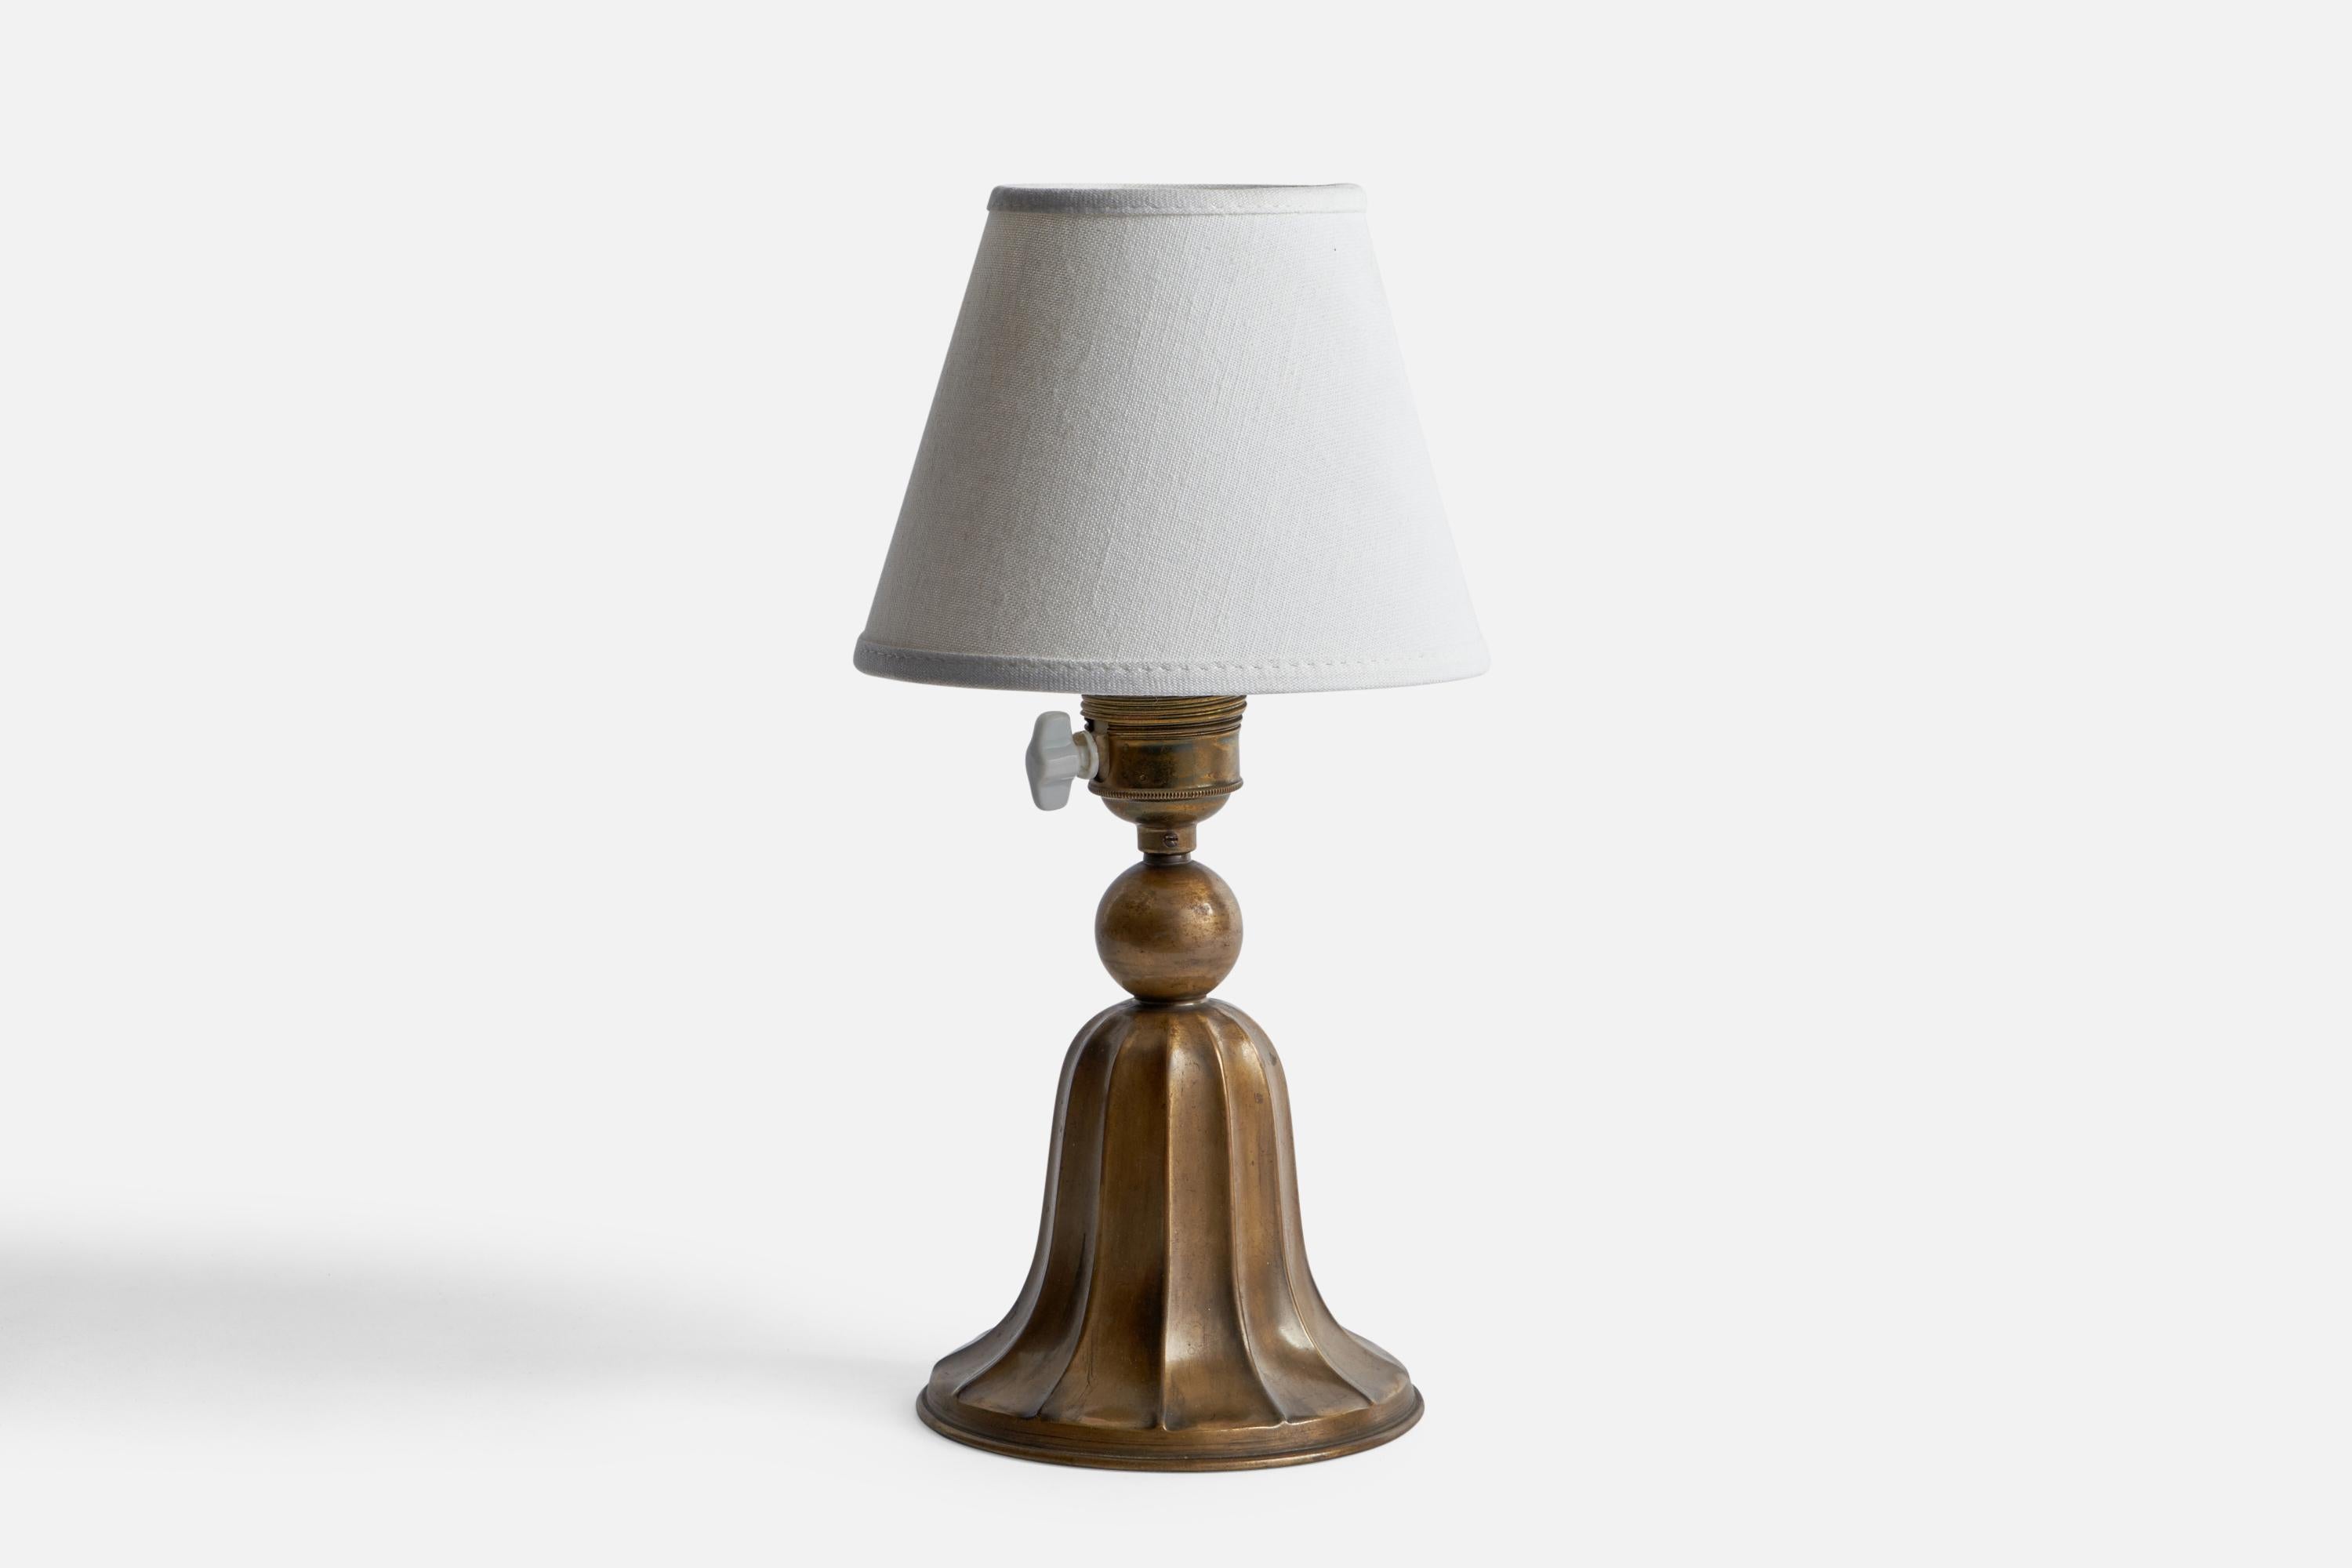 Petite lampe de table en bronze conçue et produite en Suède, années 1930.

Dimensions de la lampe (pouces) : 8.25